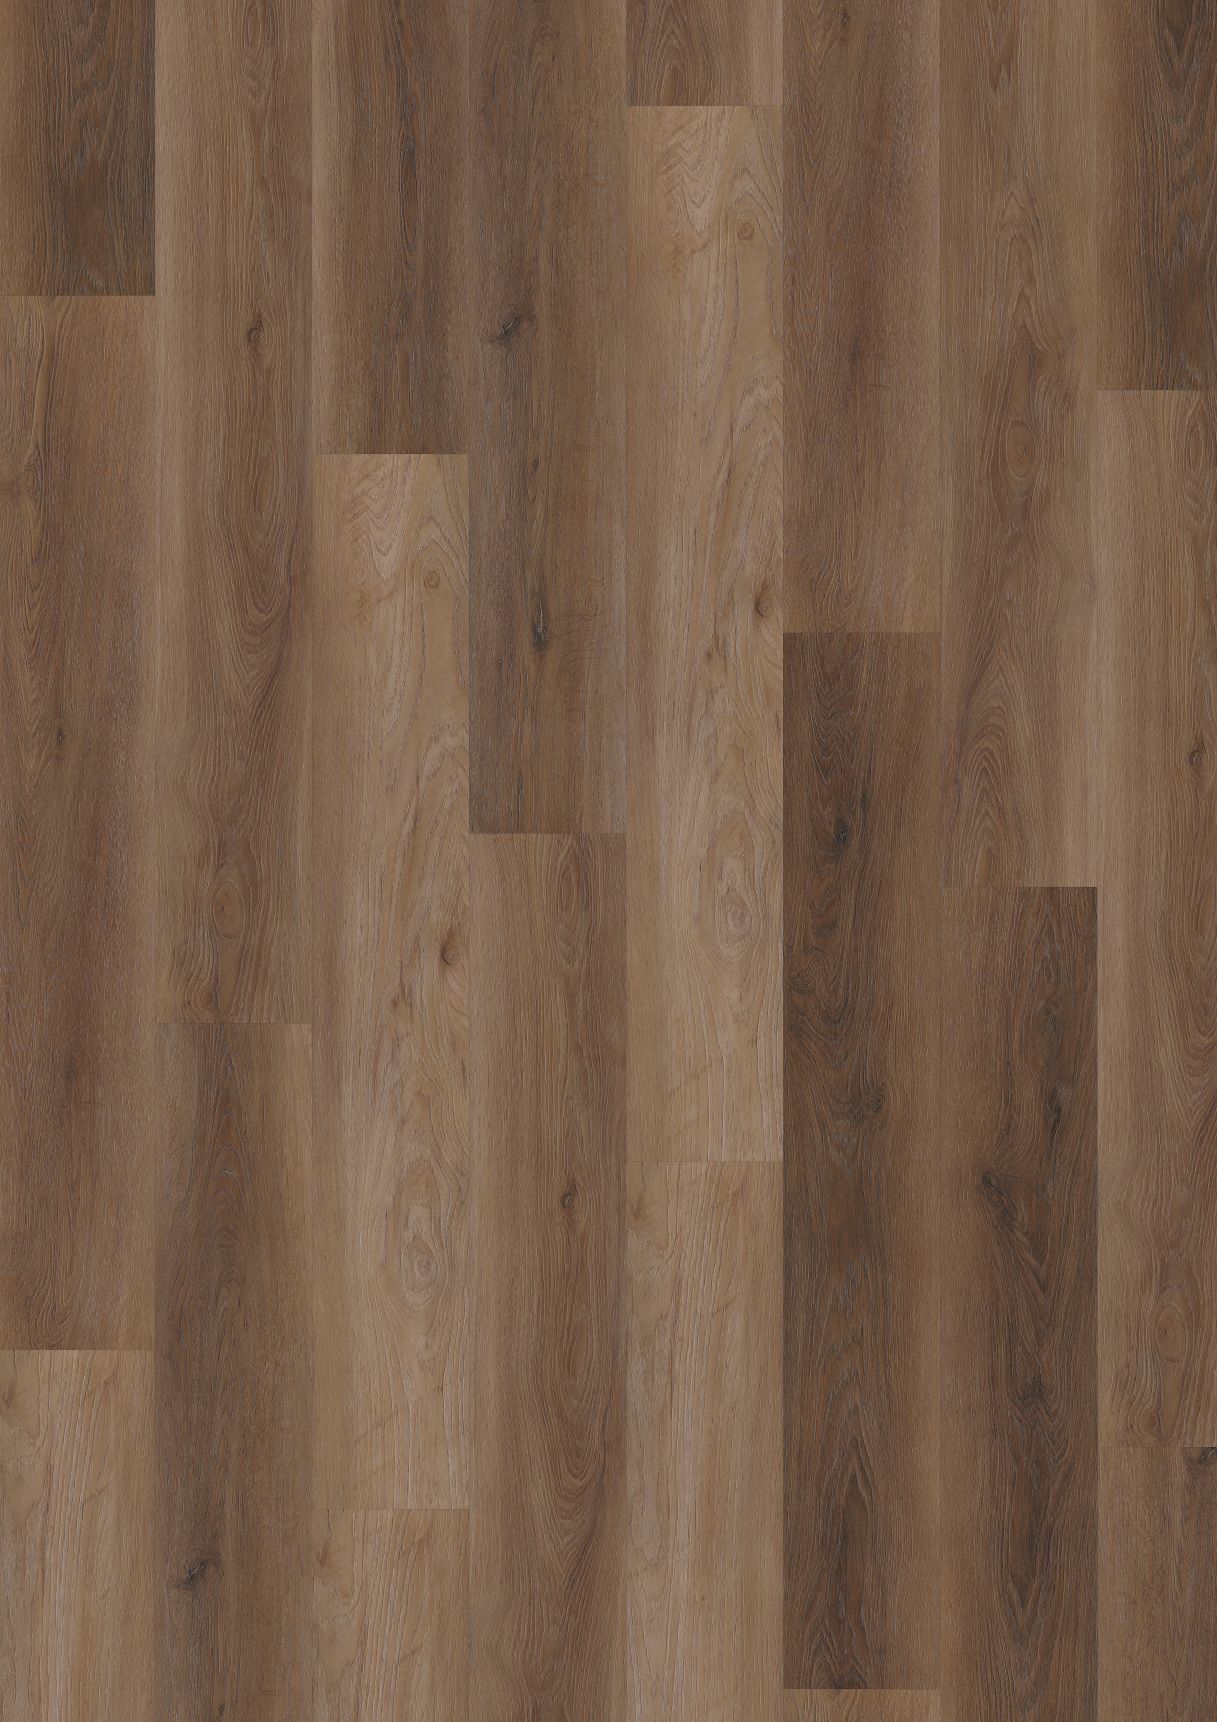 Oneflor Vinylová podlaha lepená ECO 55 051 Walnut Natural - Lepená podlaha